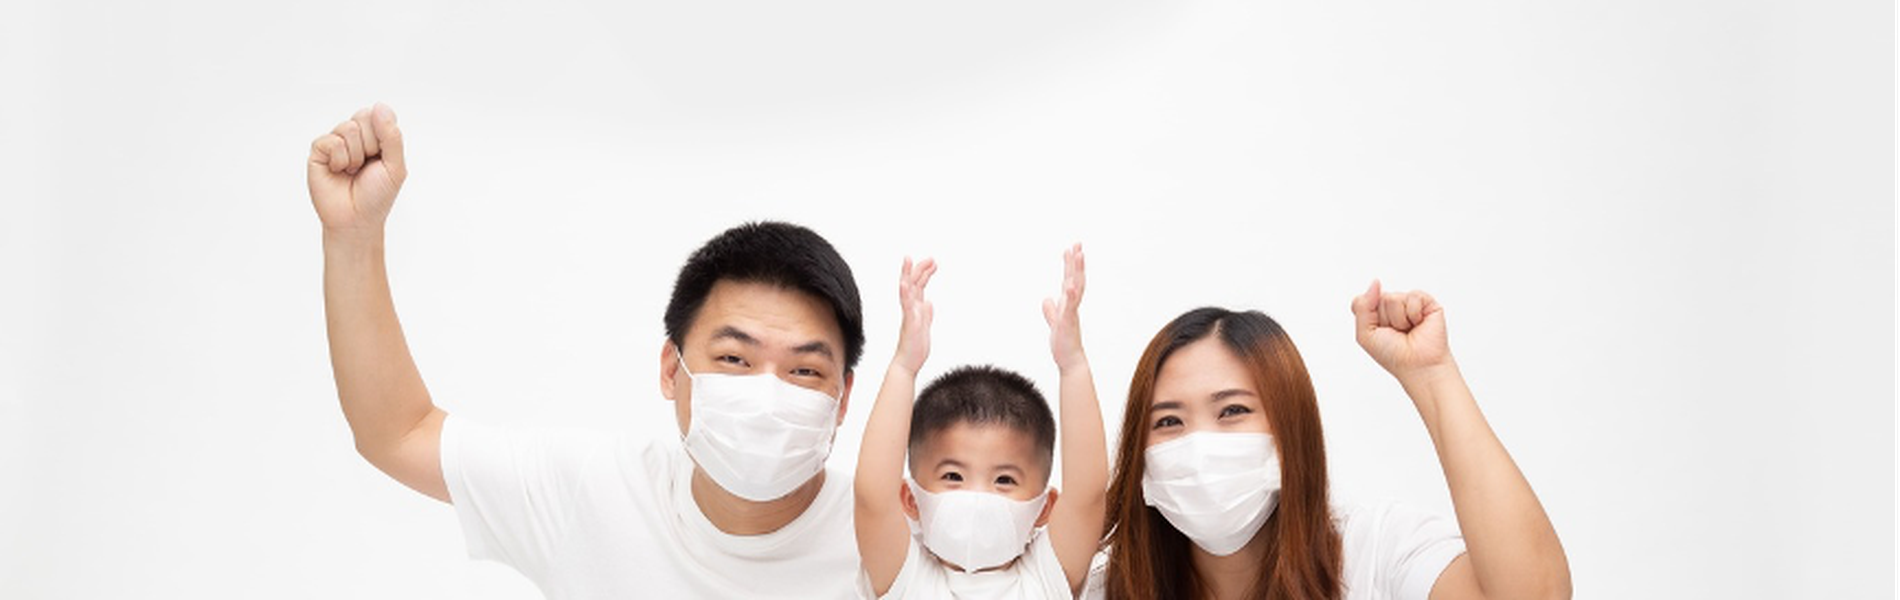 7 Tips Memilih Asuransi Kesehatan Terbaik di Masa Pandemi COVID-19.png